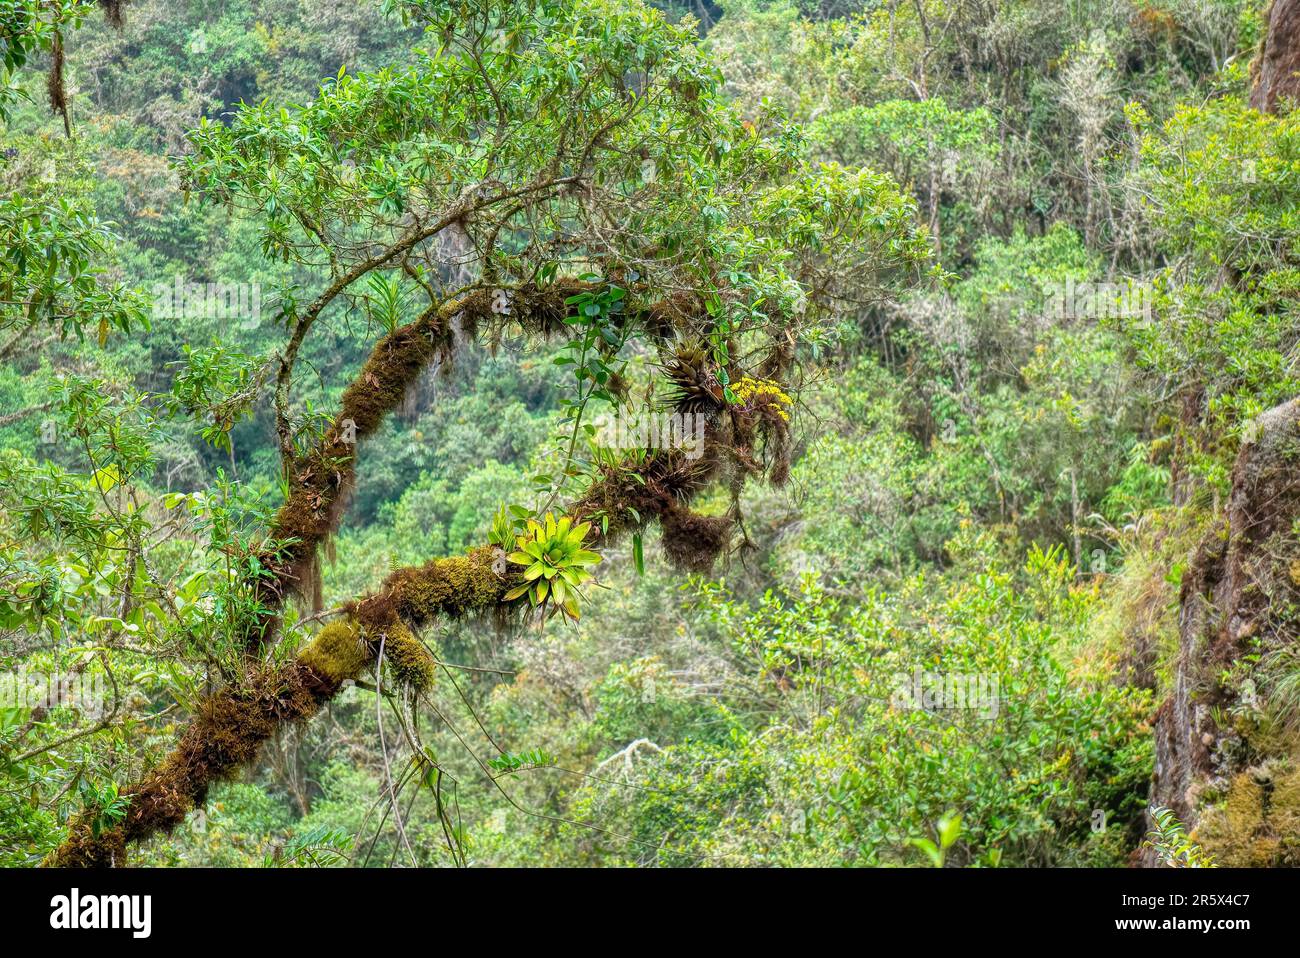 Nel Parco Nazionale di Manu, in Perù, un ramo di albero è coperto da muschio, bromeliadi e orchidee selvatiche, che sono epifiti che prosperano nell'ambiente umido. Foto Stock